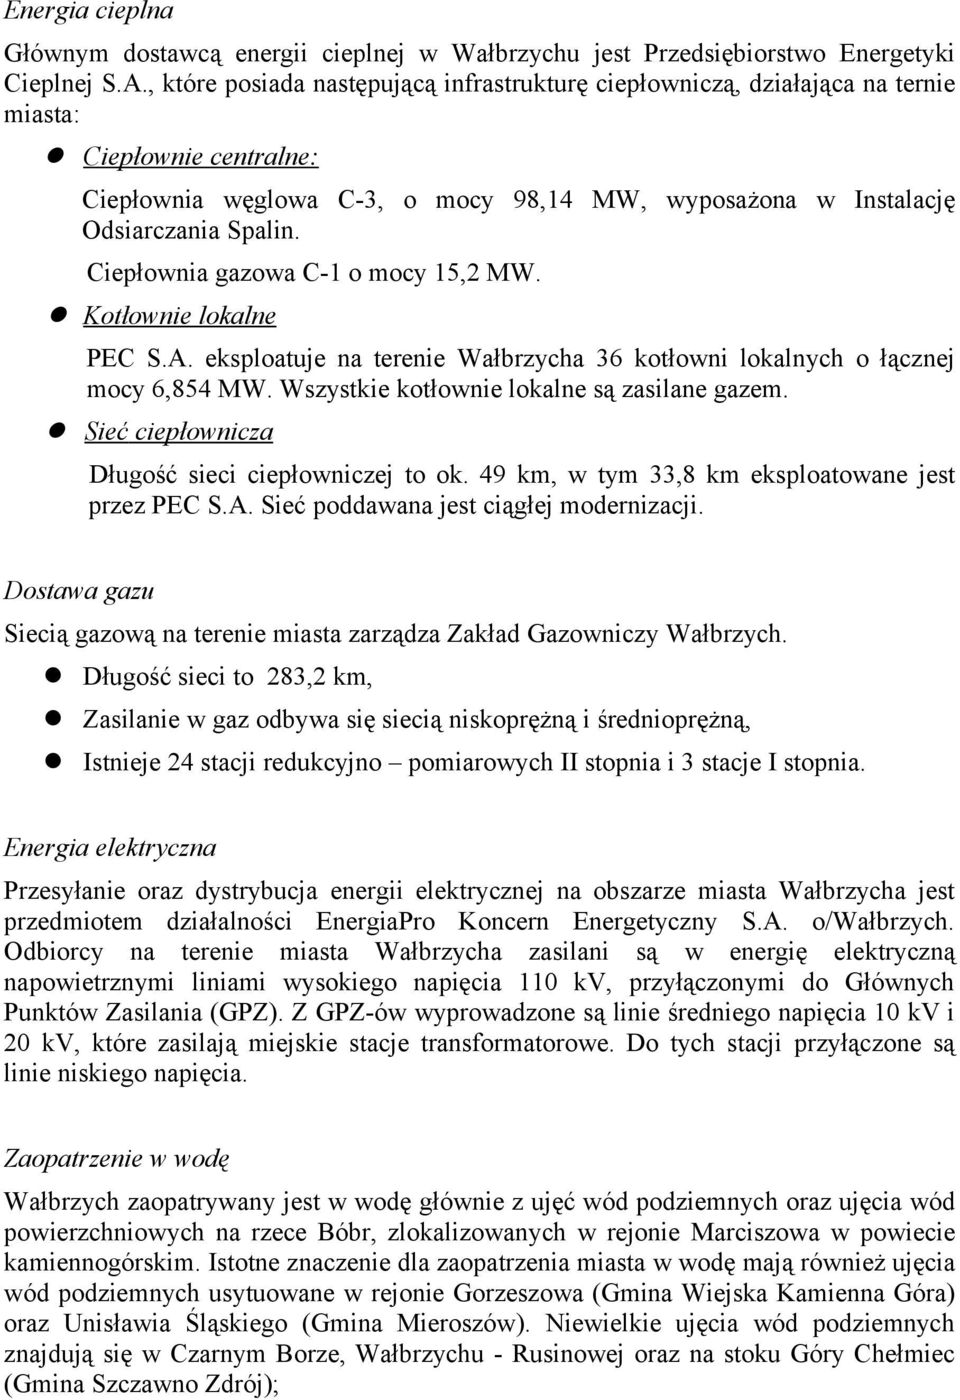 Ciepłownia gazowa C-1 o mocy 15,2 MW. Kotłownie okane PEC S.A. ekspoatuje na terenie Wałbrzycha 36 kotłowni okanych o łącznej mocy 6,854 MW. Wszystkie kotłownie okane są zasiane gazem.